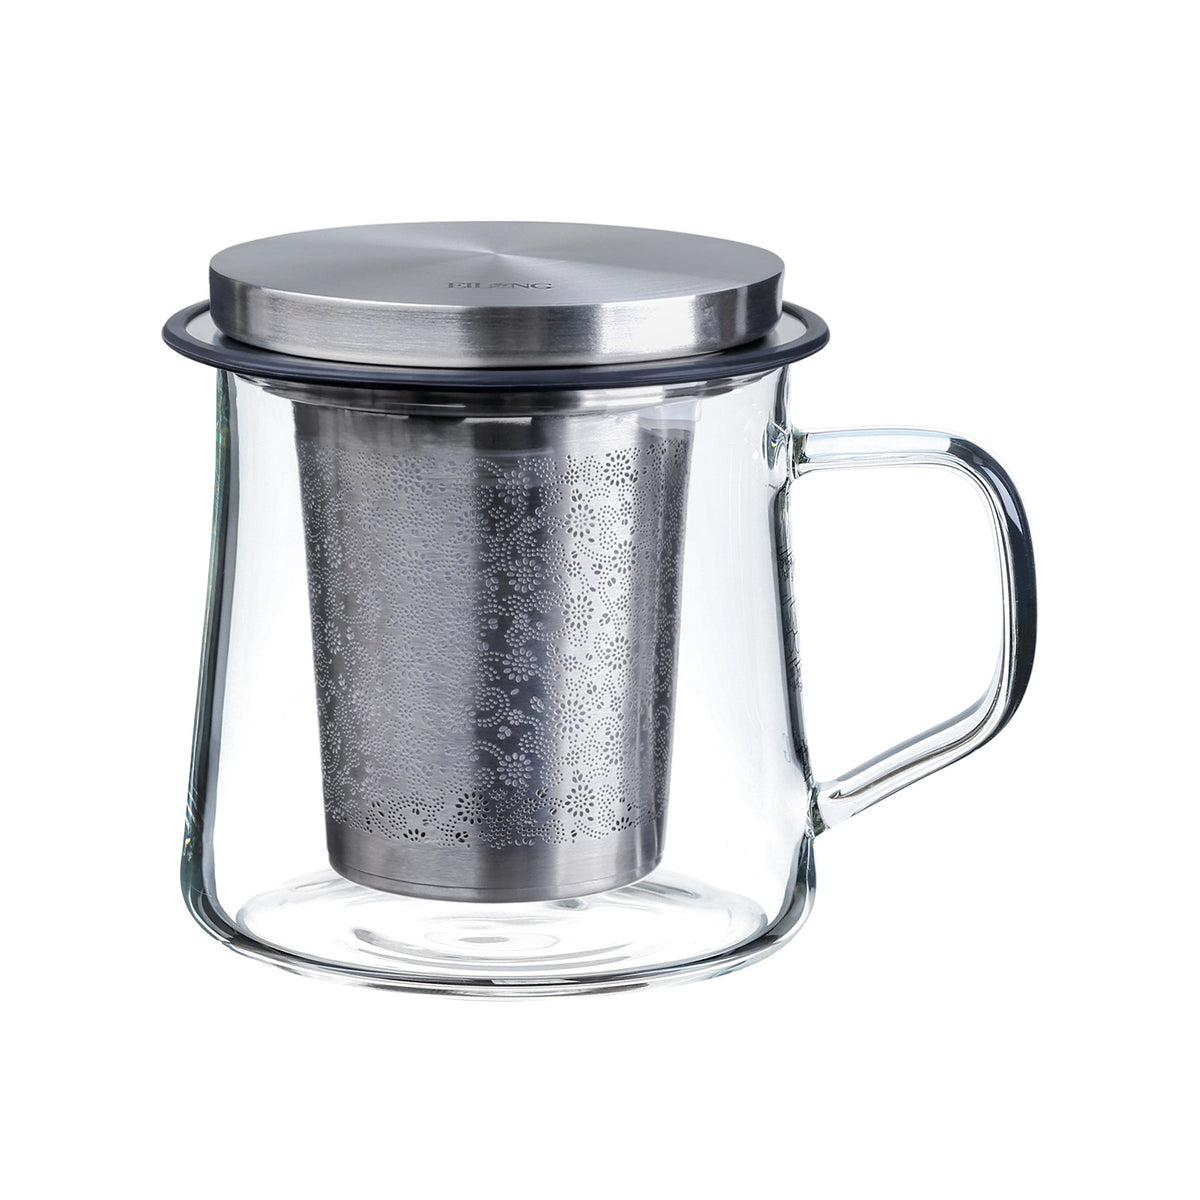 AmorArc Porcelain Tea Mug with Infuser and Lids, 18 Oz Tea Cup Strainer  with Tea Bag Holder for Loos…See more AmorArc Porcelain Tea Mug with  Infuser